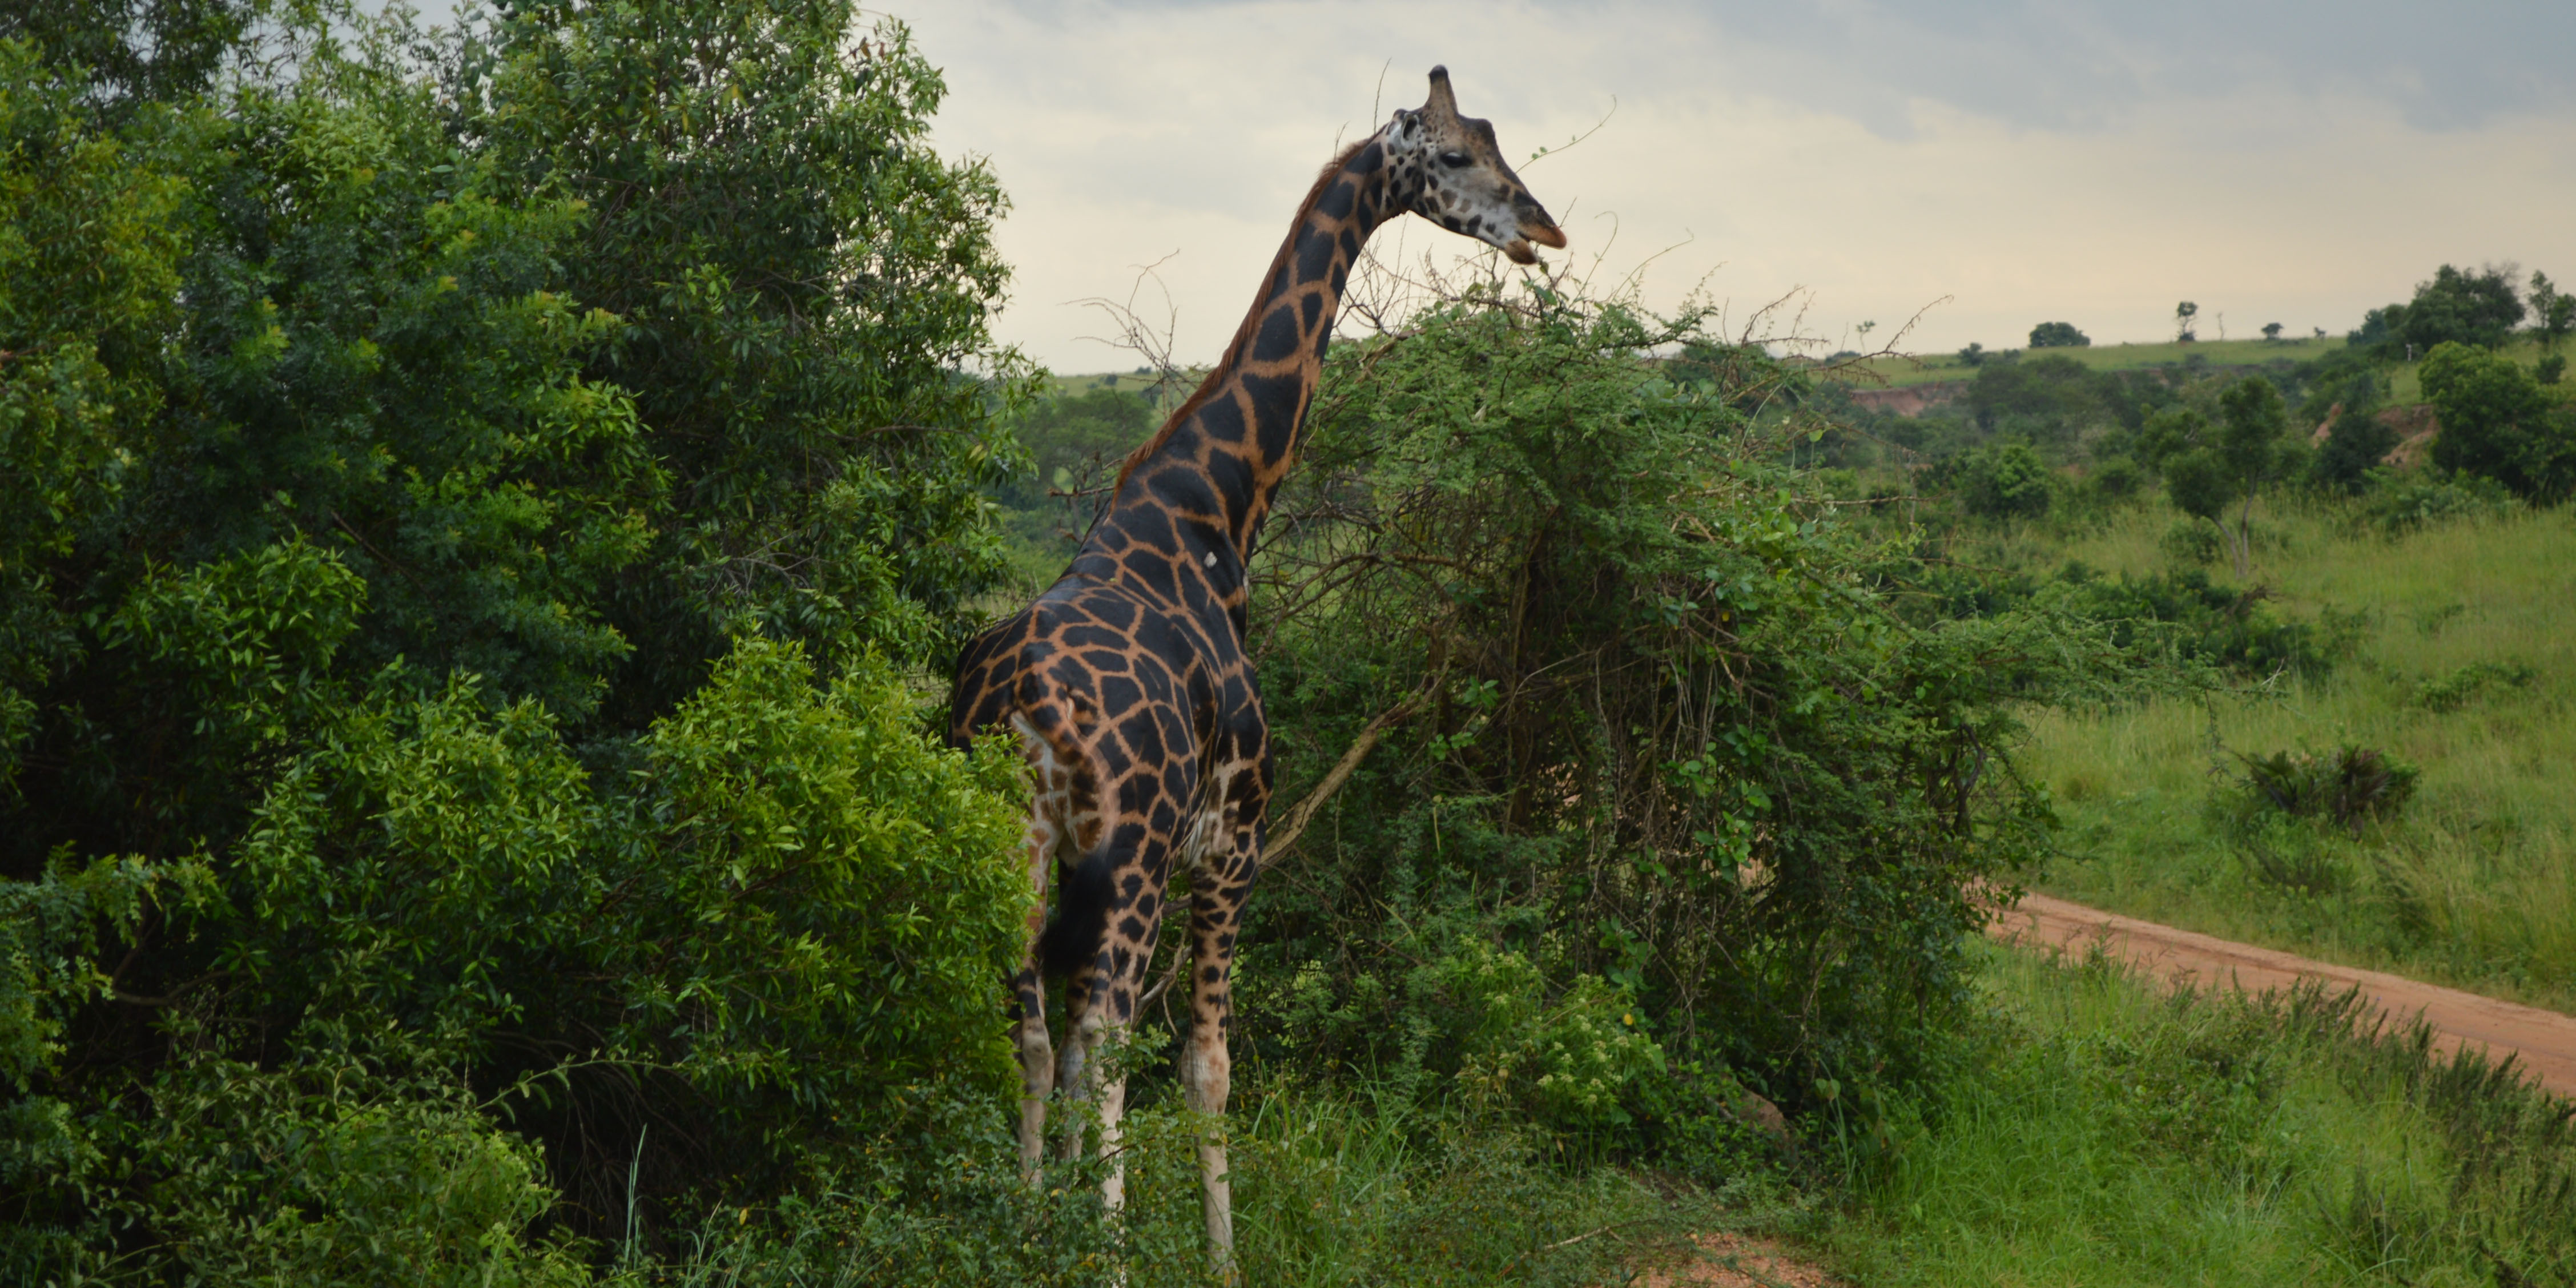 Reisen bedeutet Neues finden - Abenteuer Auslandssemester in Uganda Teil 2 2